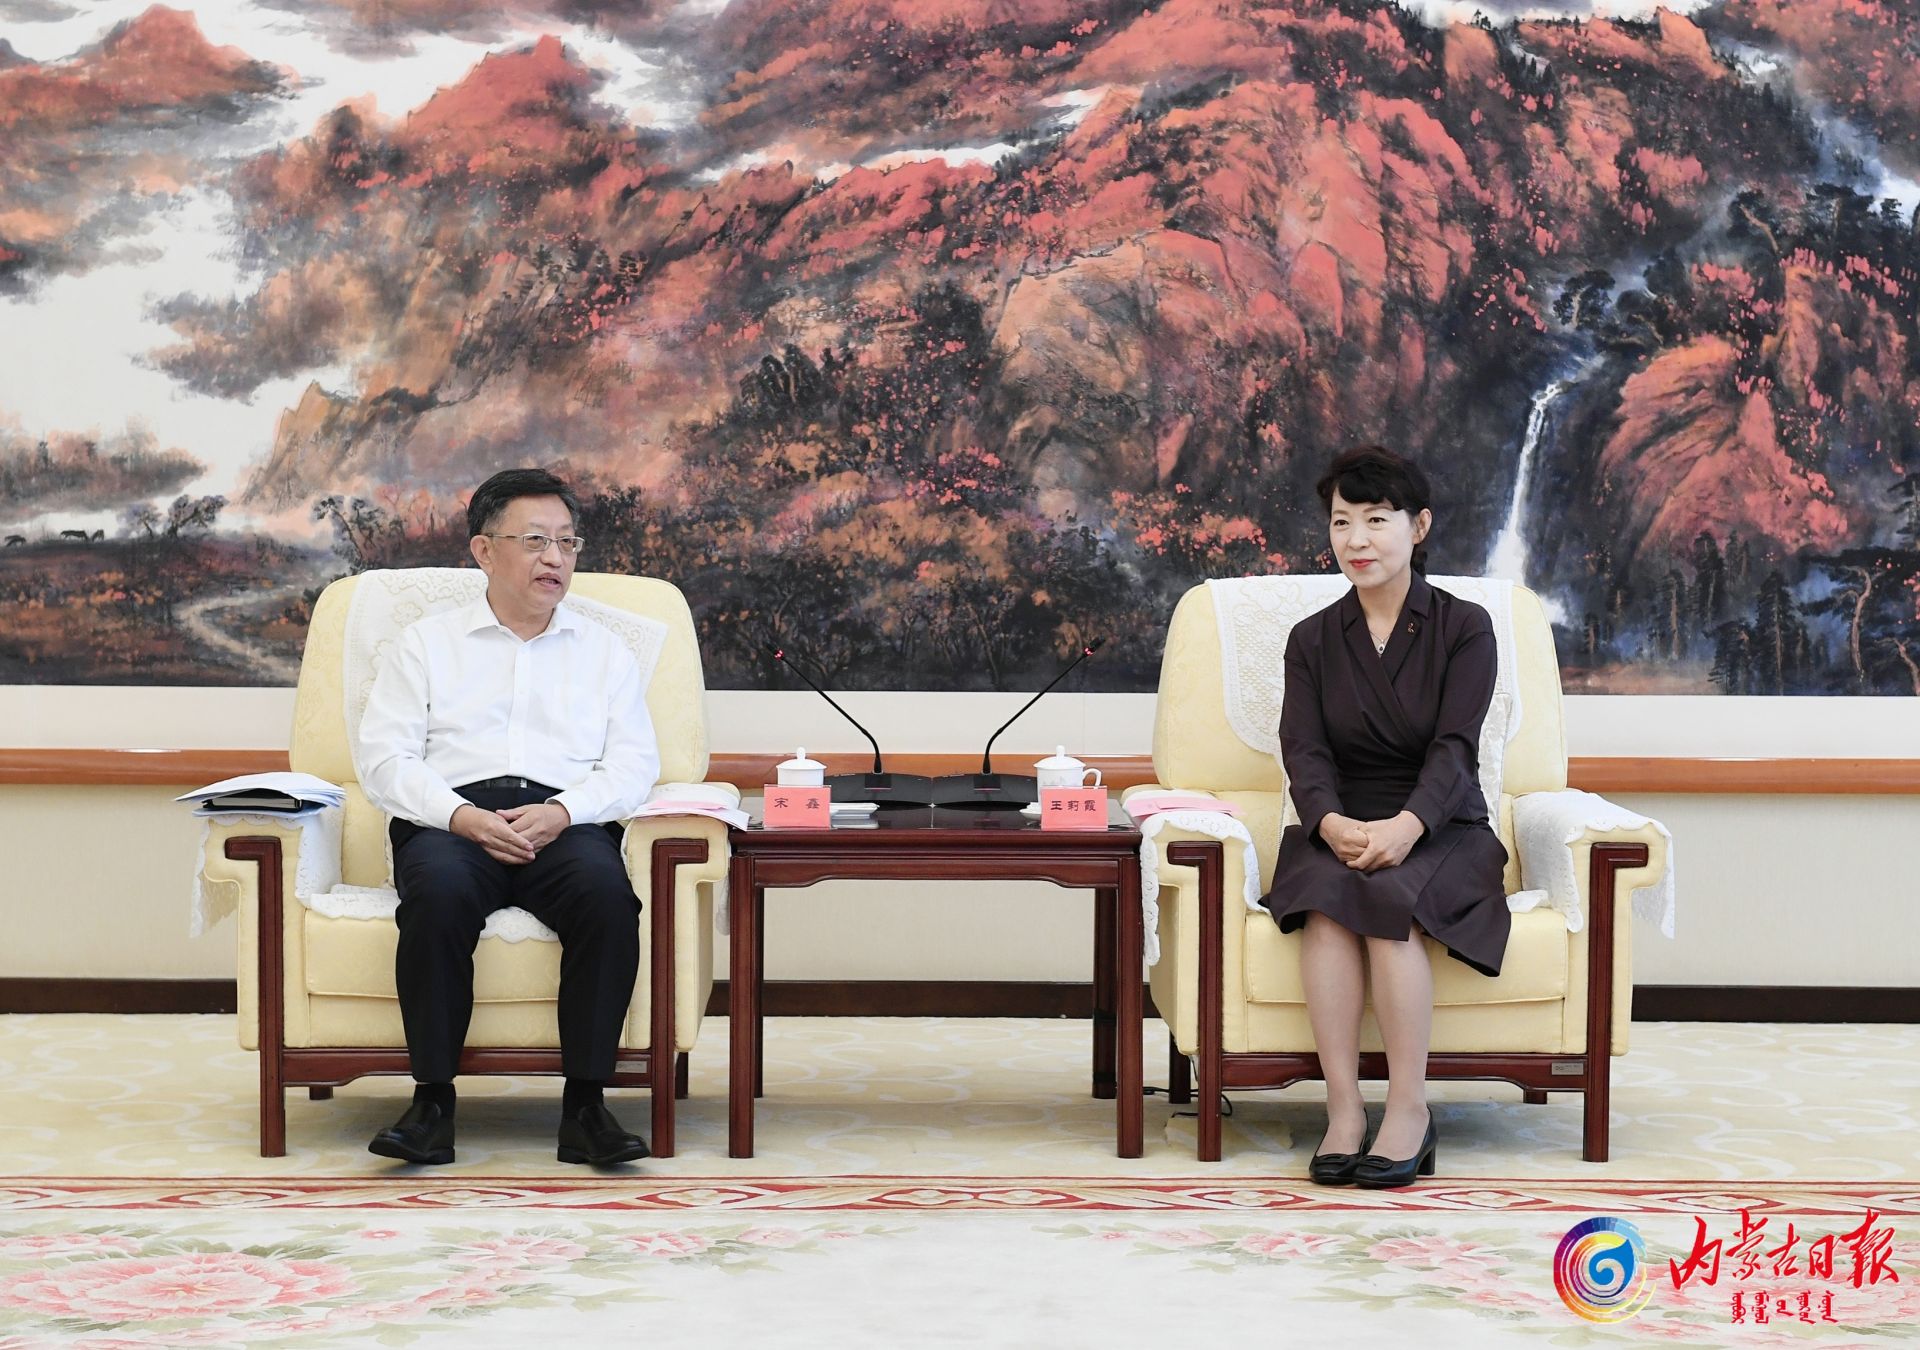 中节能与内蒙古自治区政府签署战略合作协议